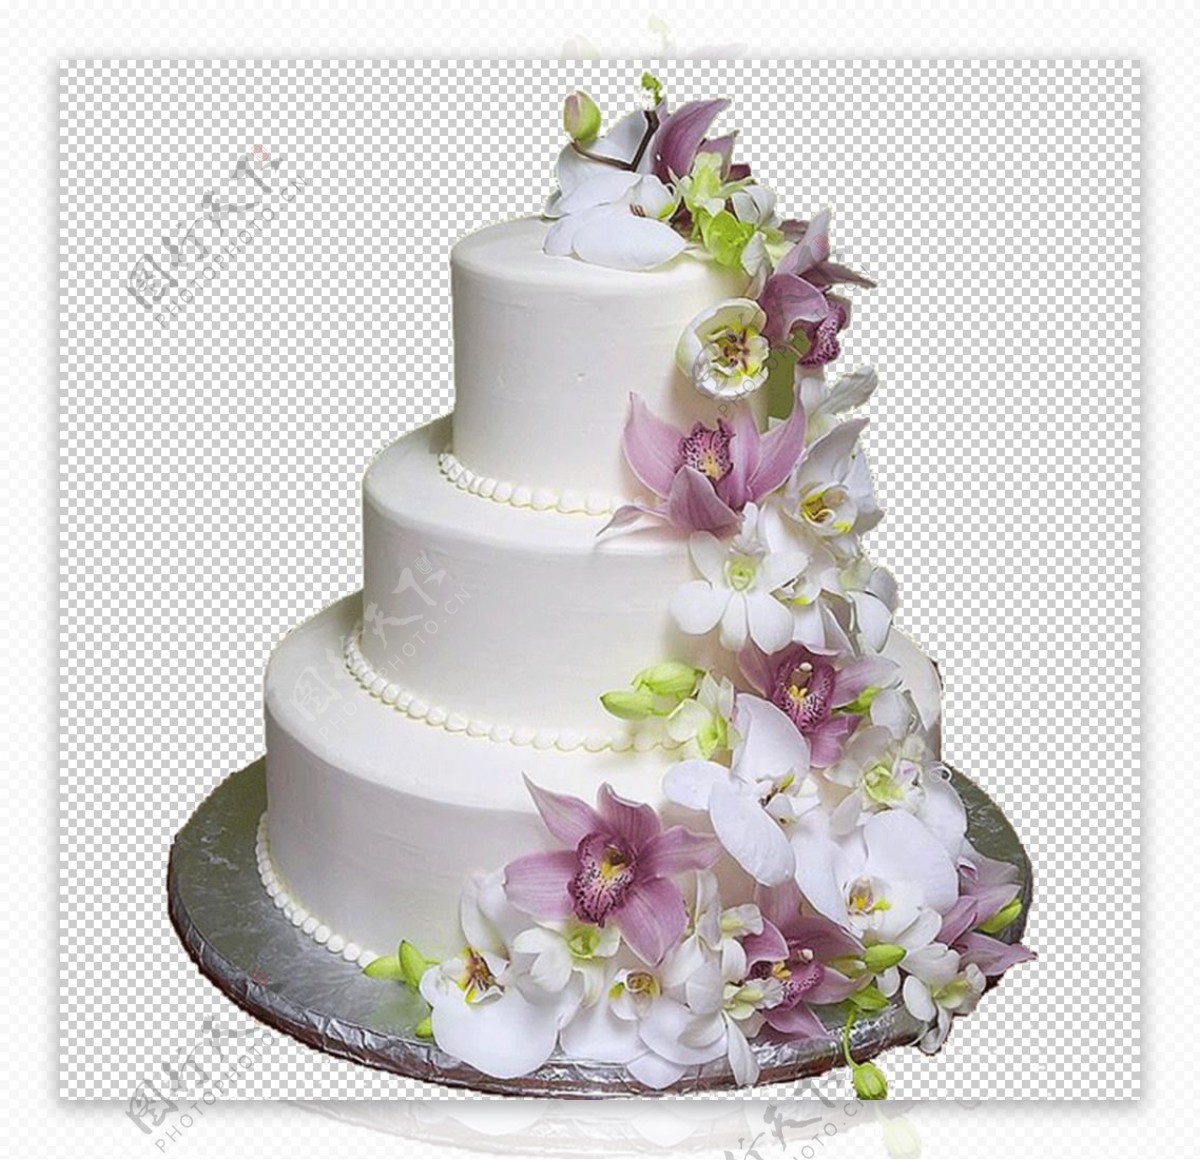 一张婚礼蛋糕上花绣球花的紫色照片 库存图片. 图片 包括有 豪华, 场合, 生日, 八仙花属, 蛋糕, 淡紫色 - 196945453